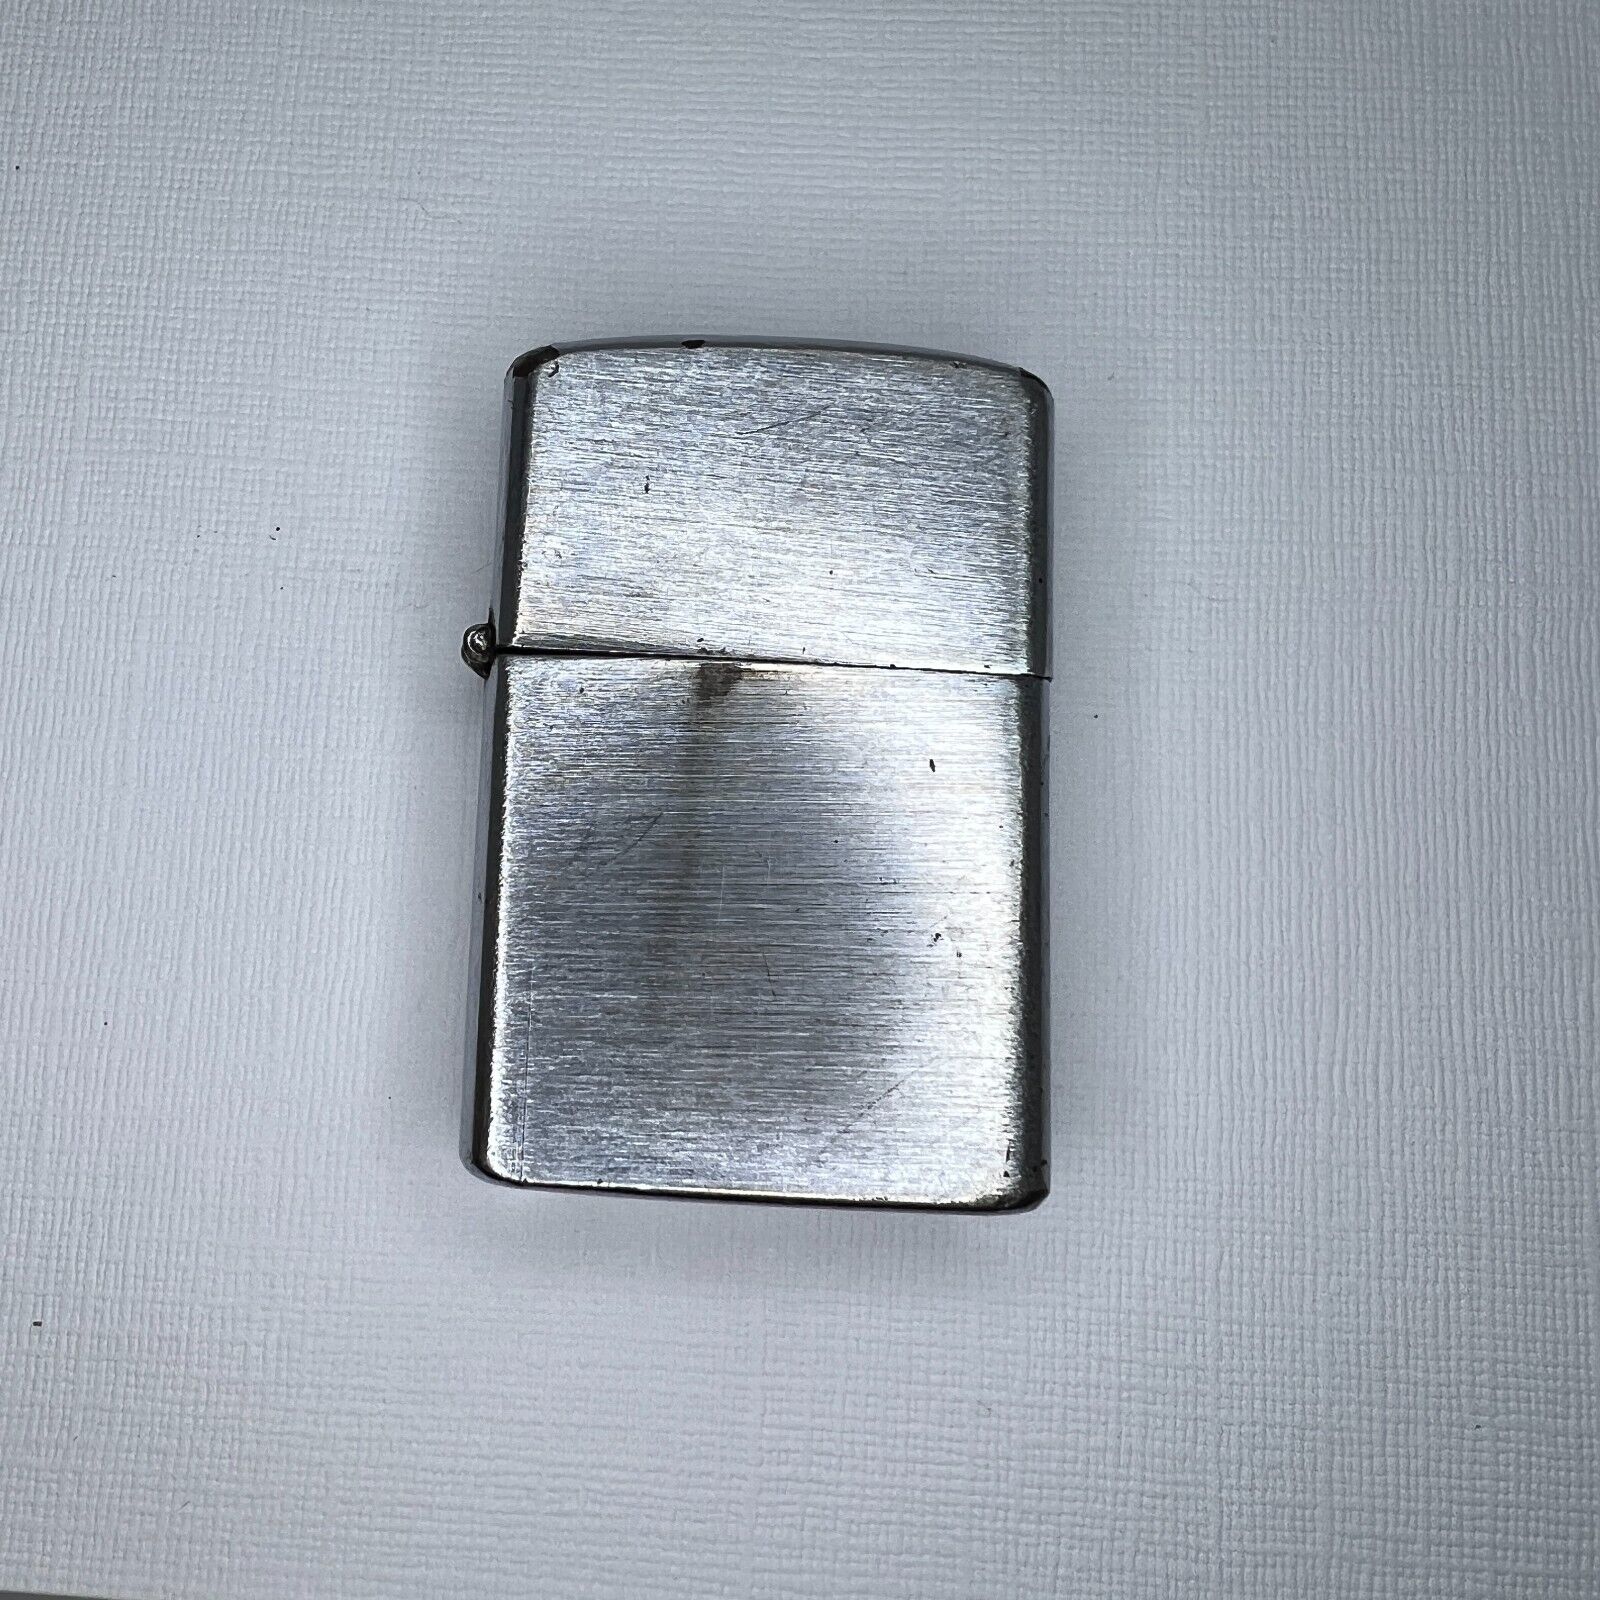 Vintage Windproof Flip Top Lighter Blue Shield Japan Pocket Lighter Heavily Used